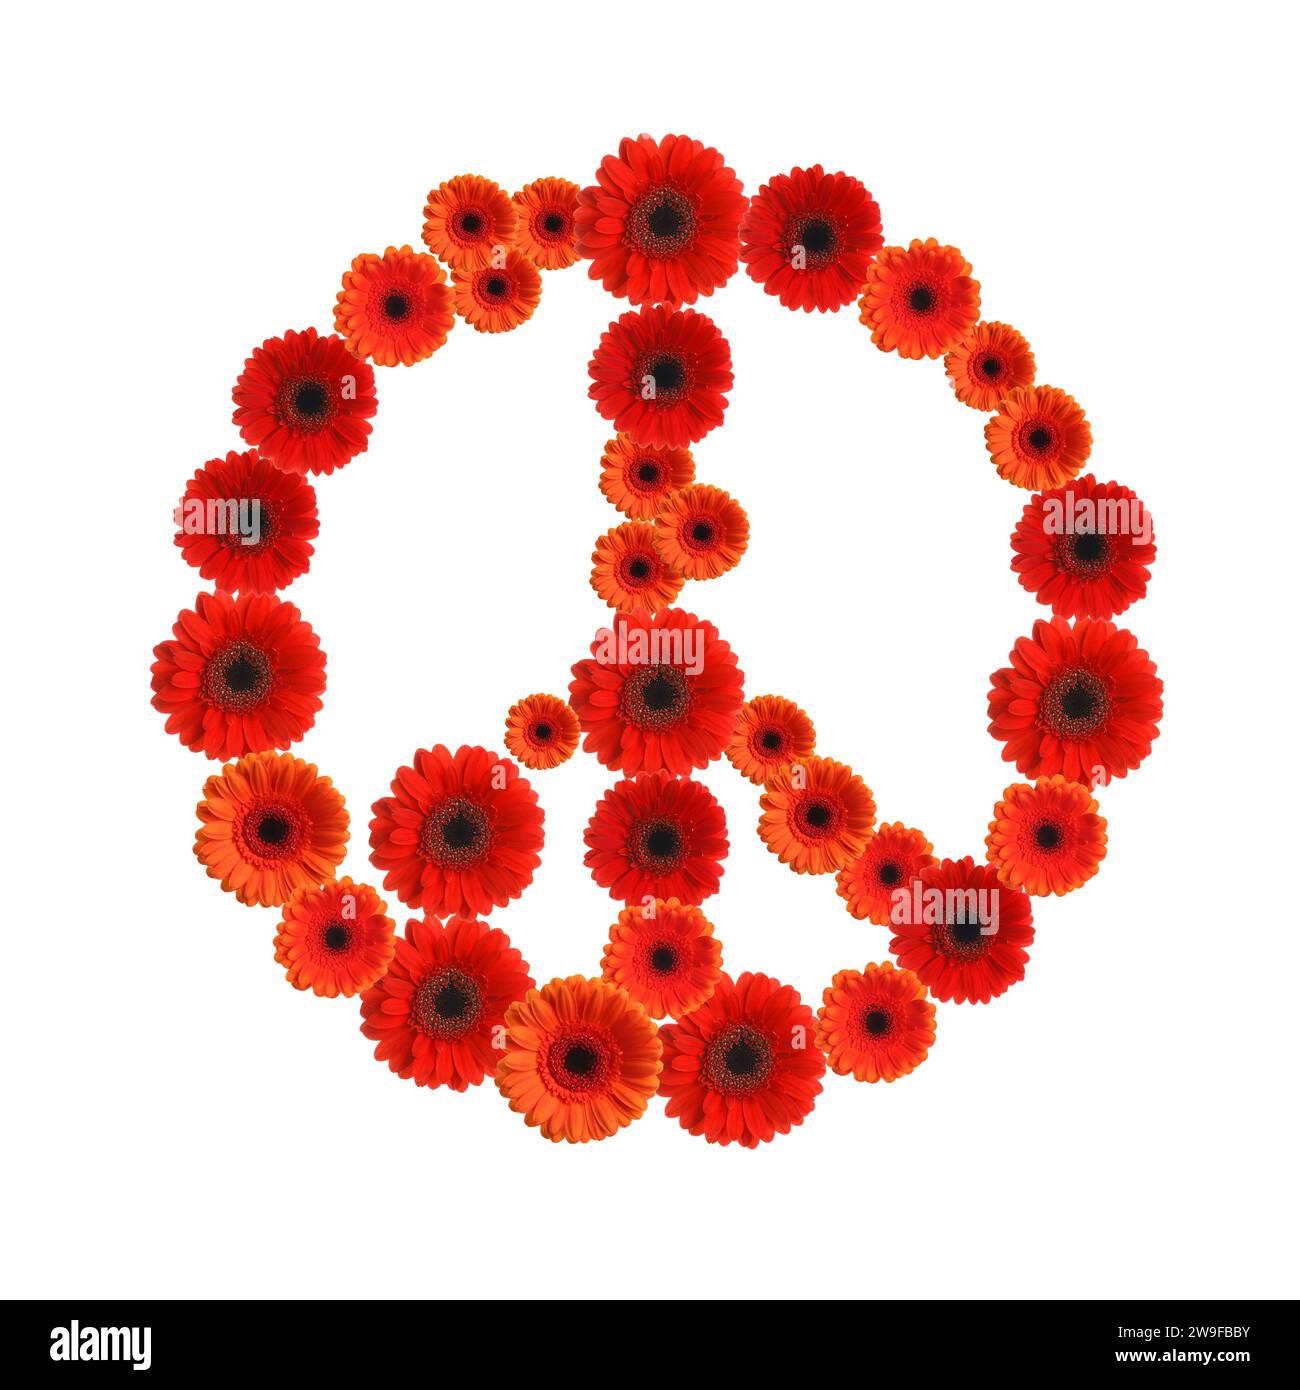 Simbolo di pace hippie fatto di fiori di gerbera su sfondo bianco Foto Stock